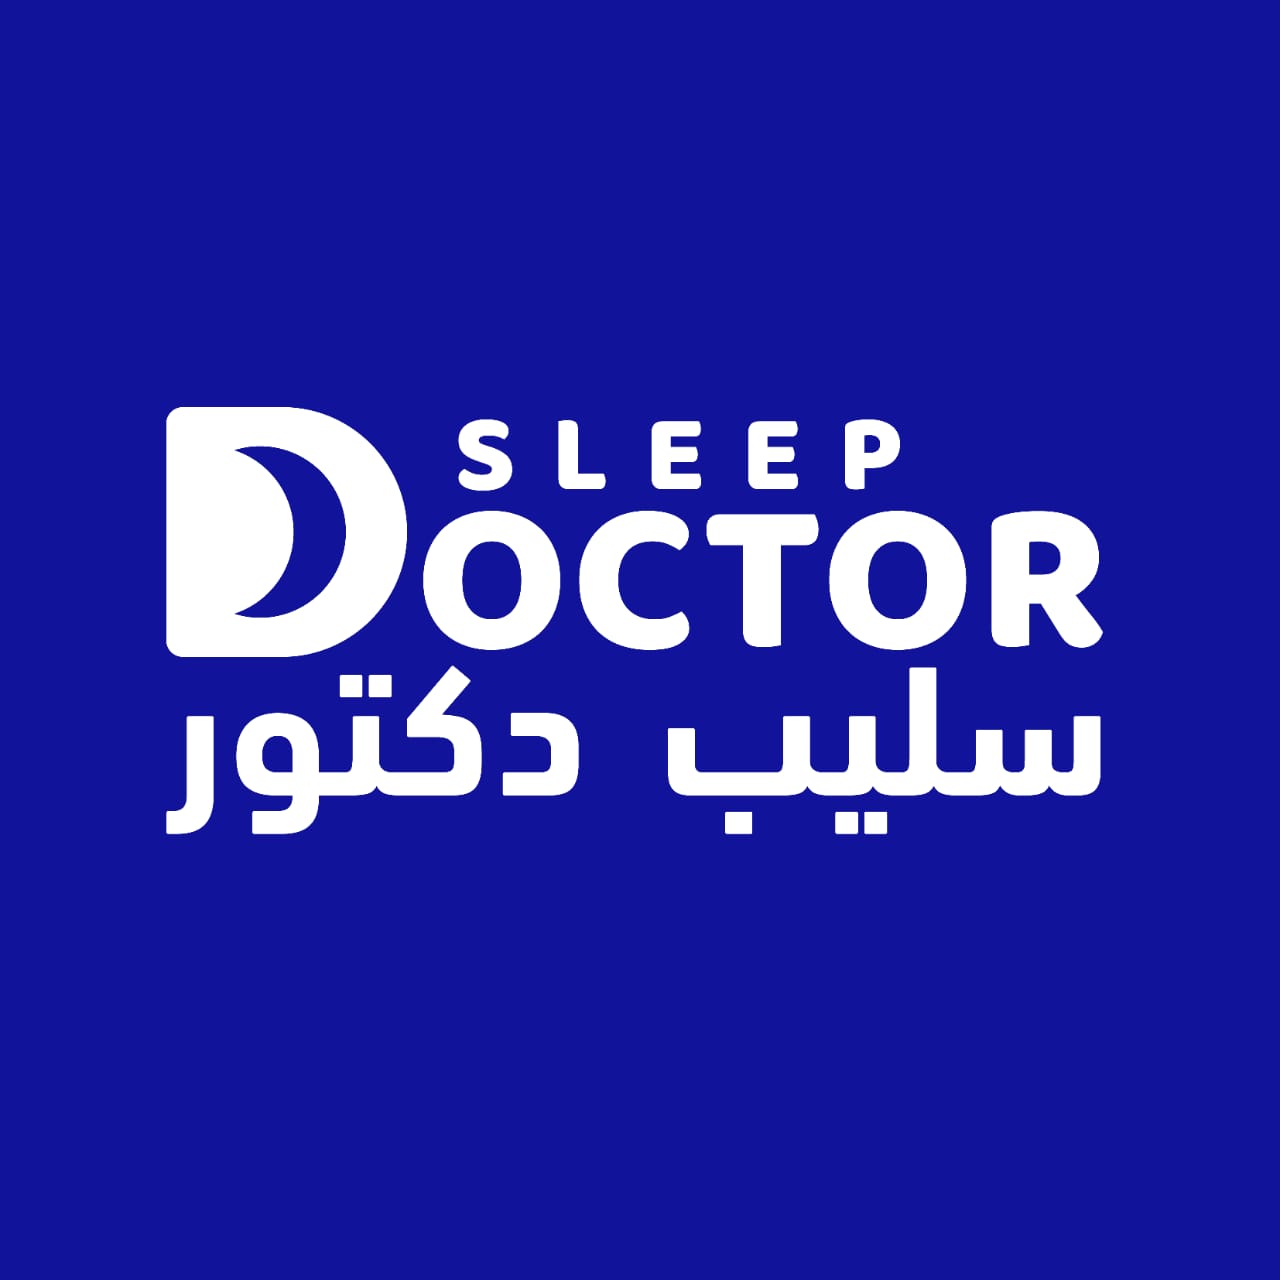 Sleep doctor